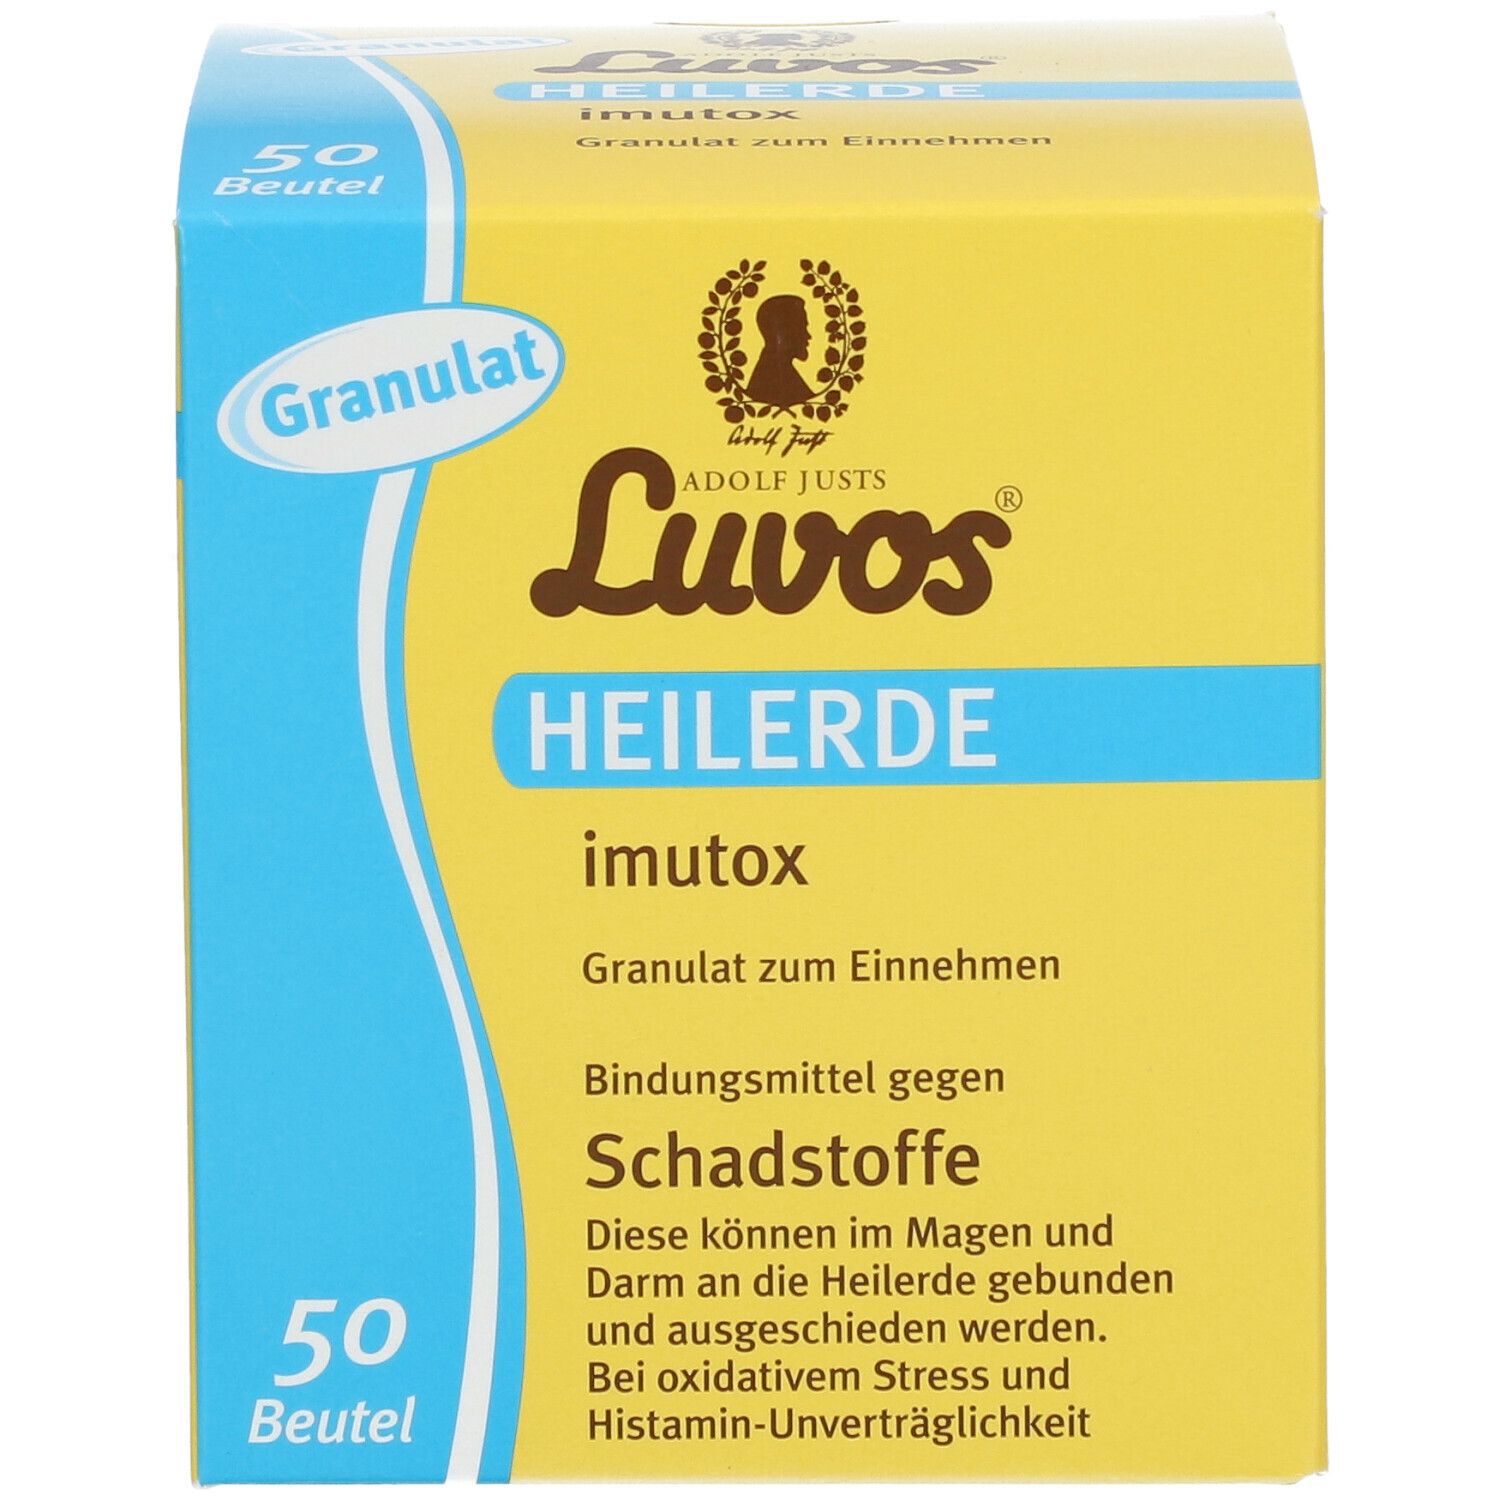 Luvos-Heilerde imutox